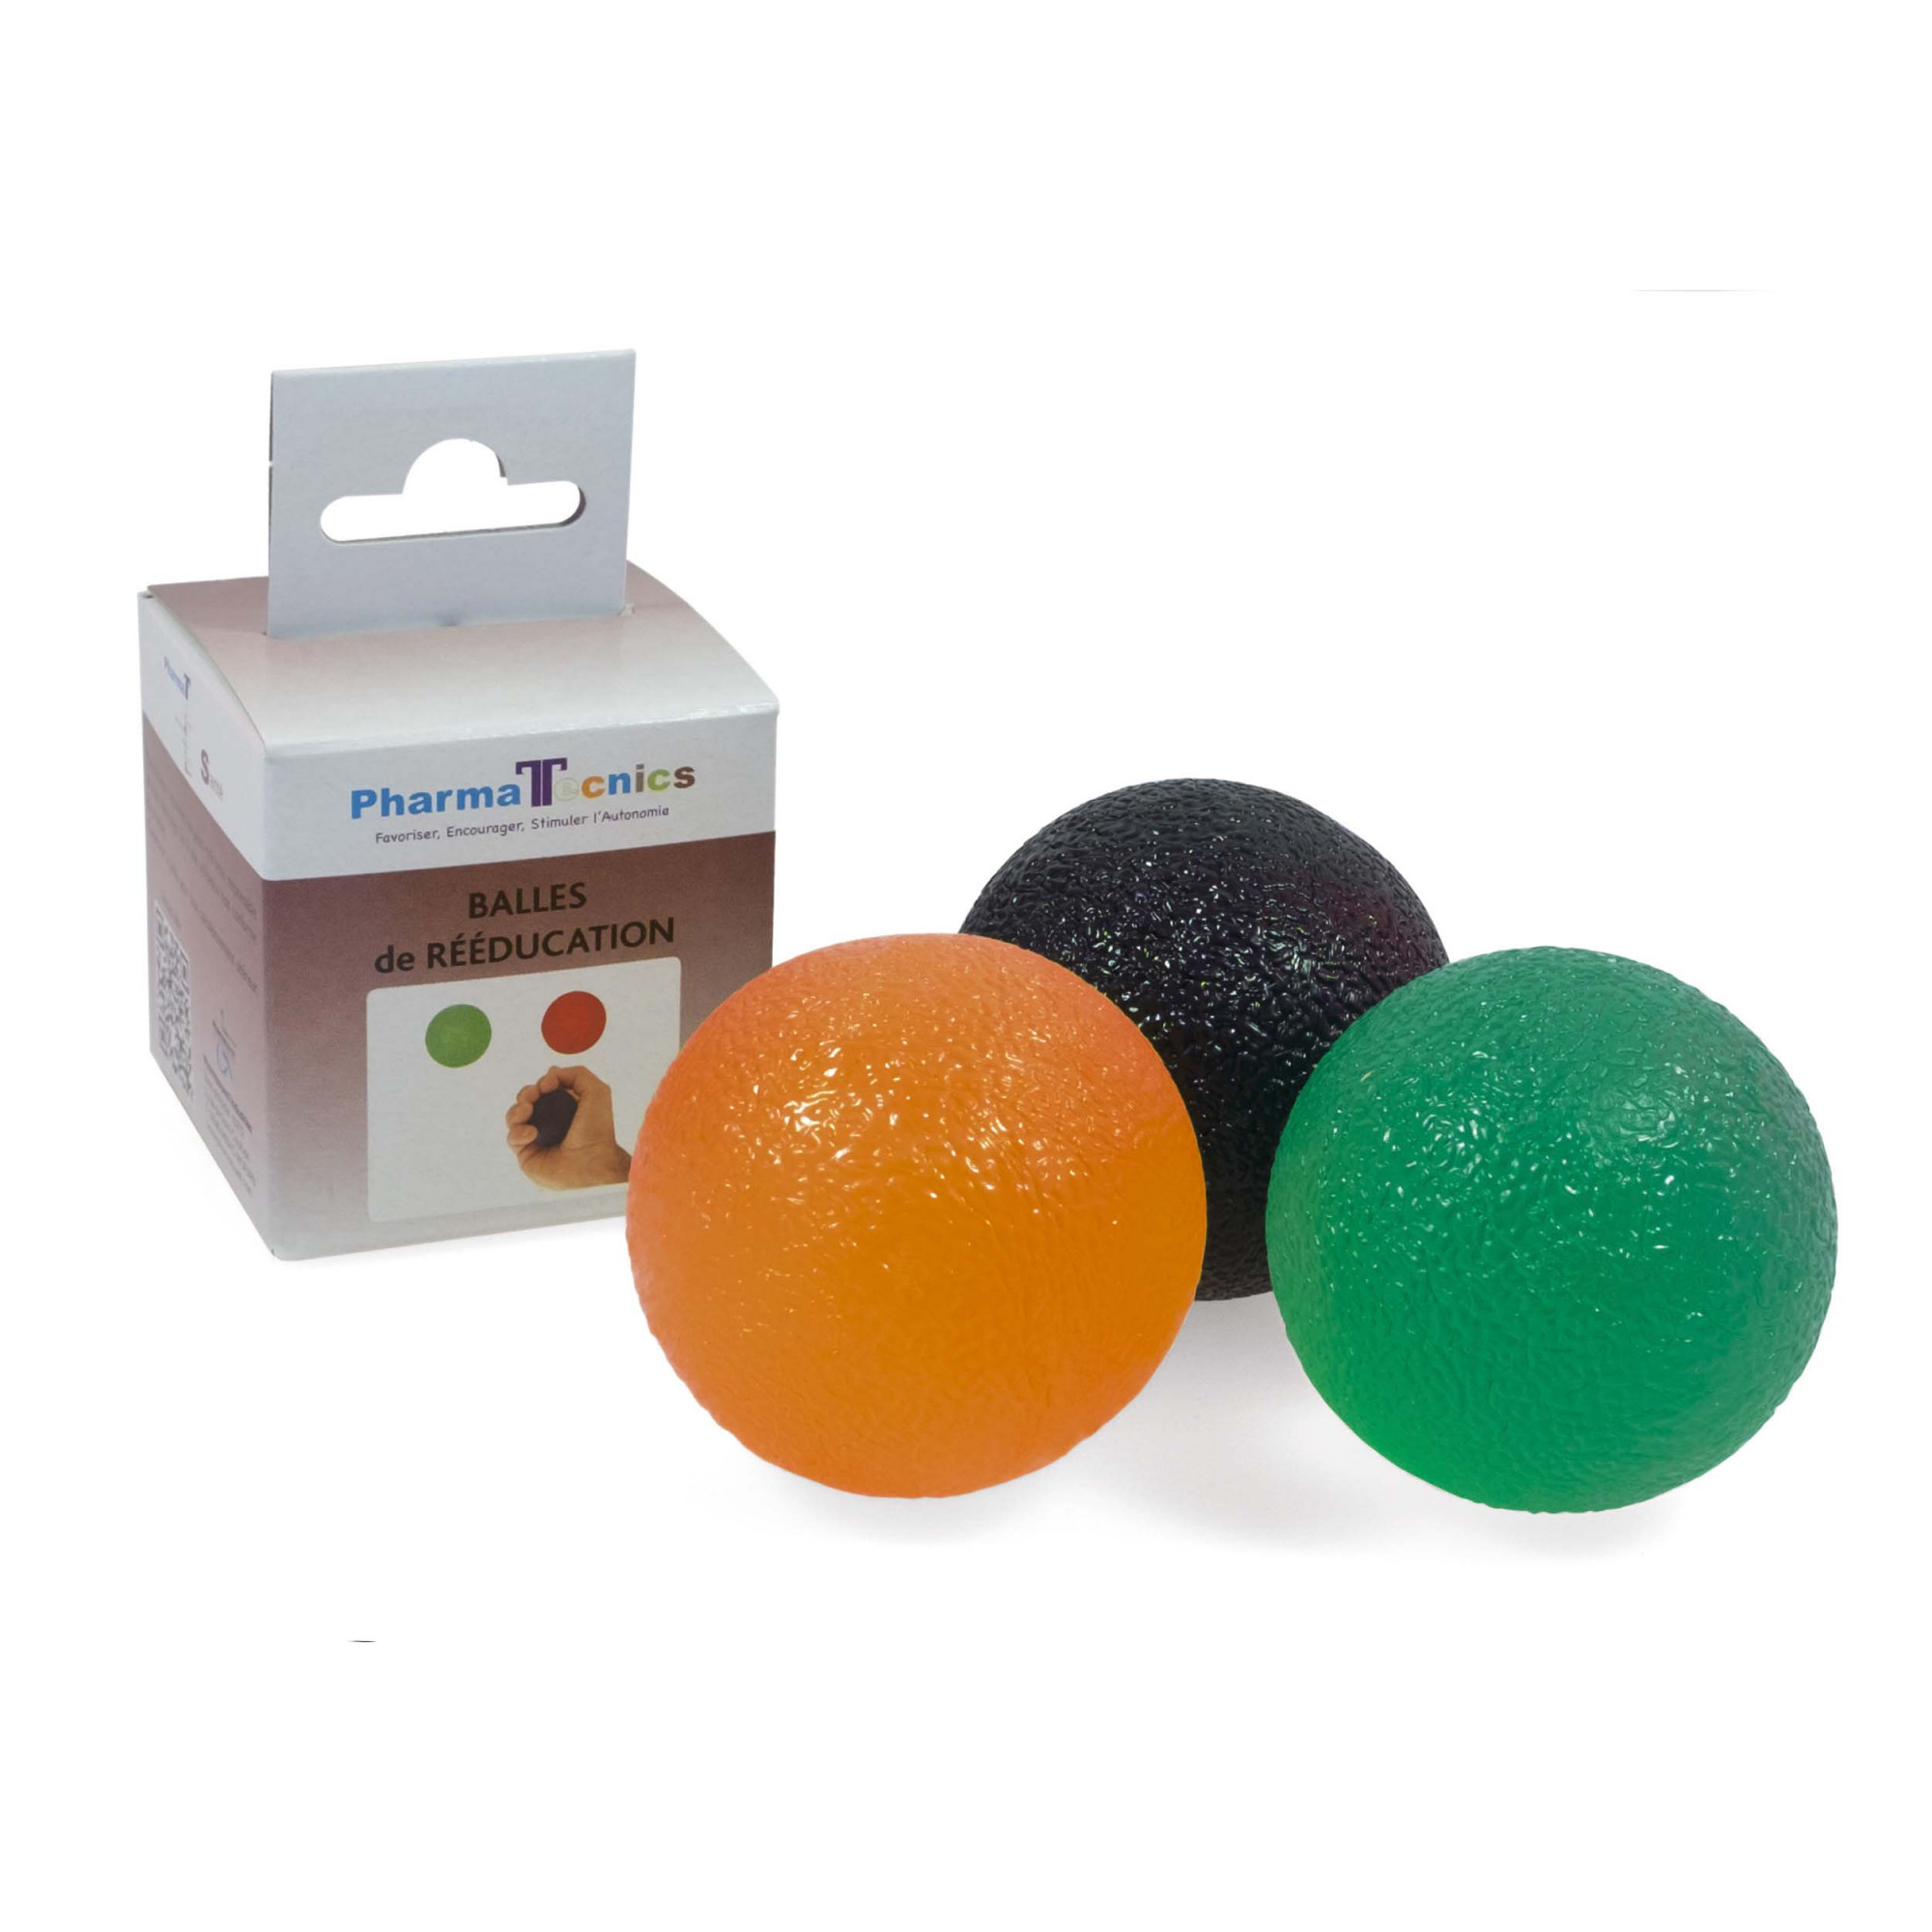 Balles en mousse - diamètres de 5,5 cm, 7 cm ou 9 cm - Coloris jaune -  Balles de rééducation - Robé vente matériel médical